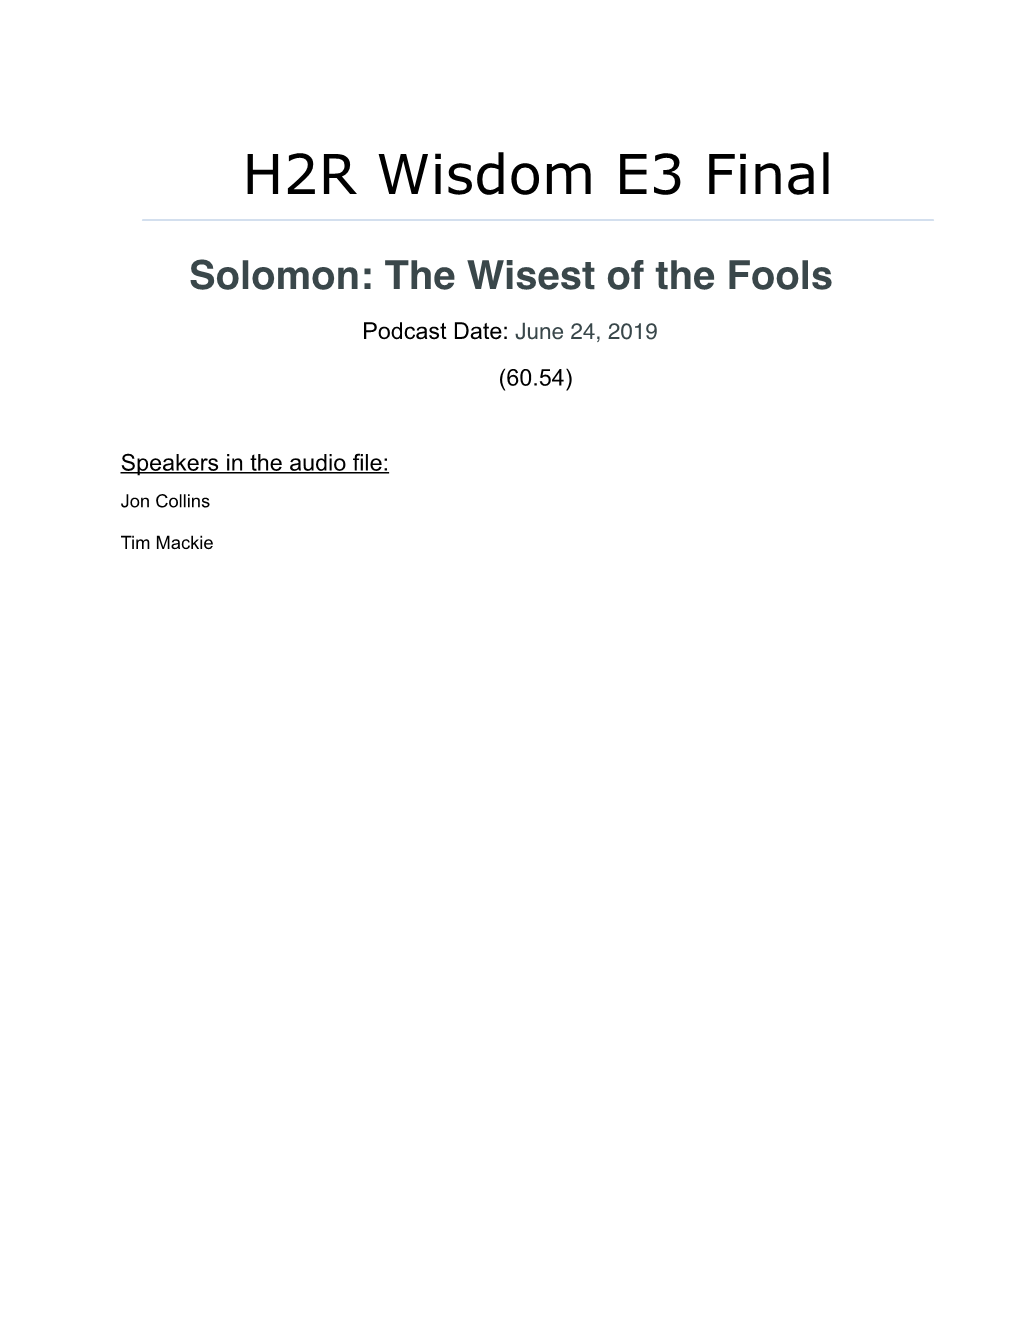 H2R Wisdom E3 Solomon